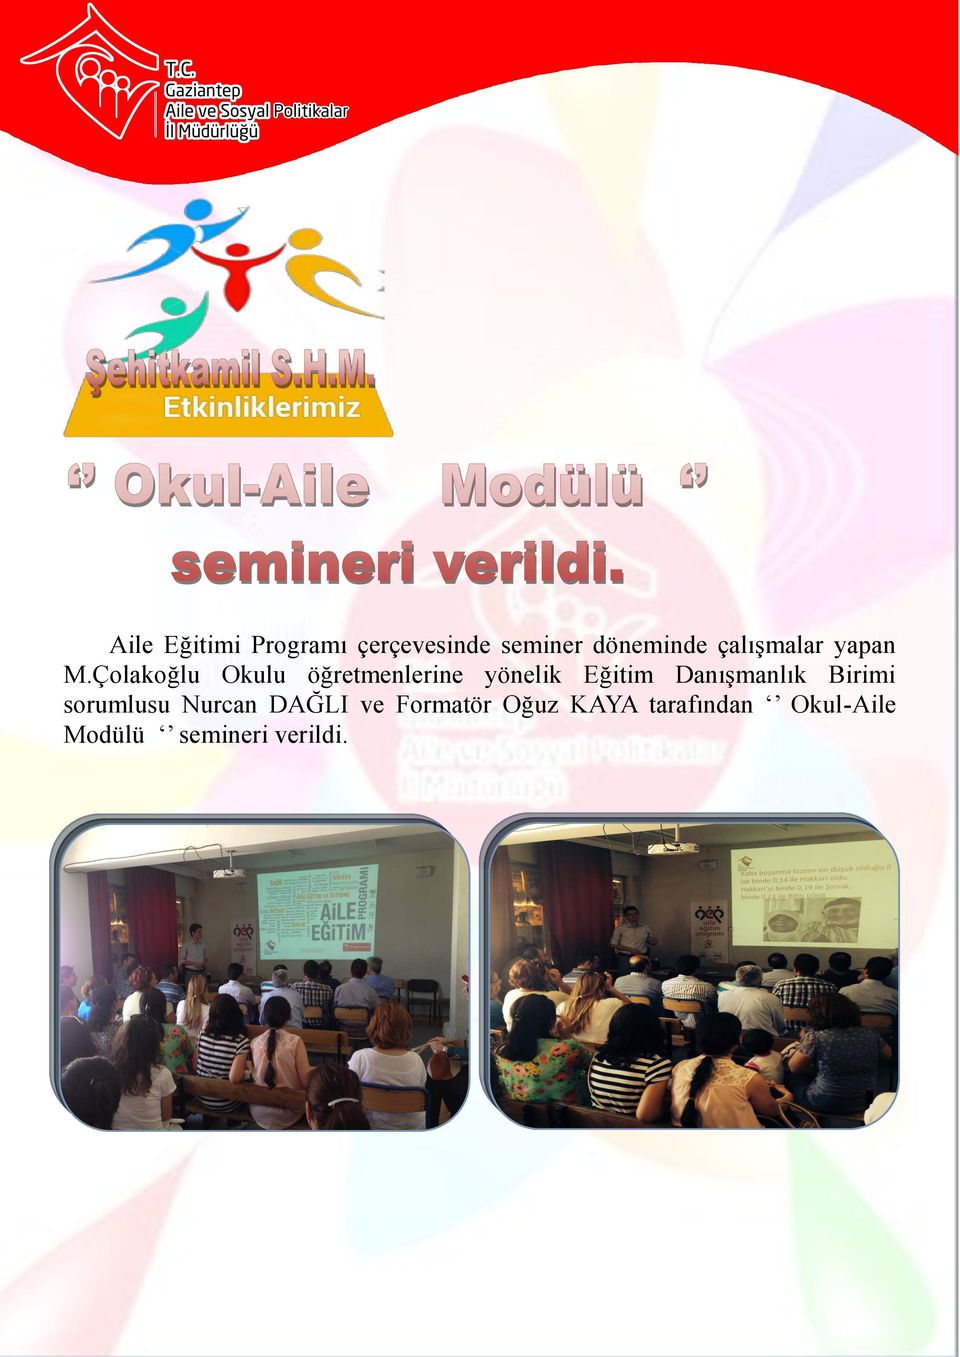 Nurcan DAĞLI ve Formatör Oğuz KAYA tarafından Okul-Aile Modülü semineri